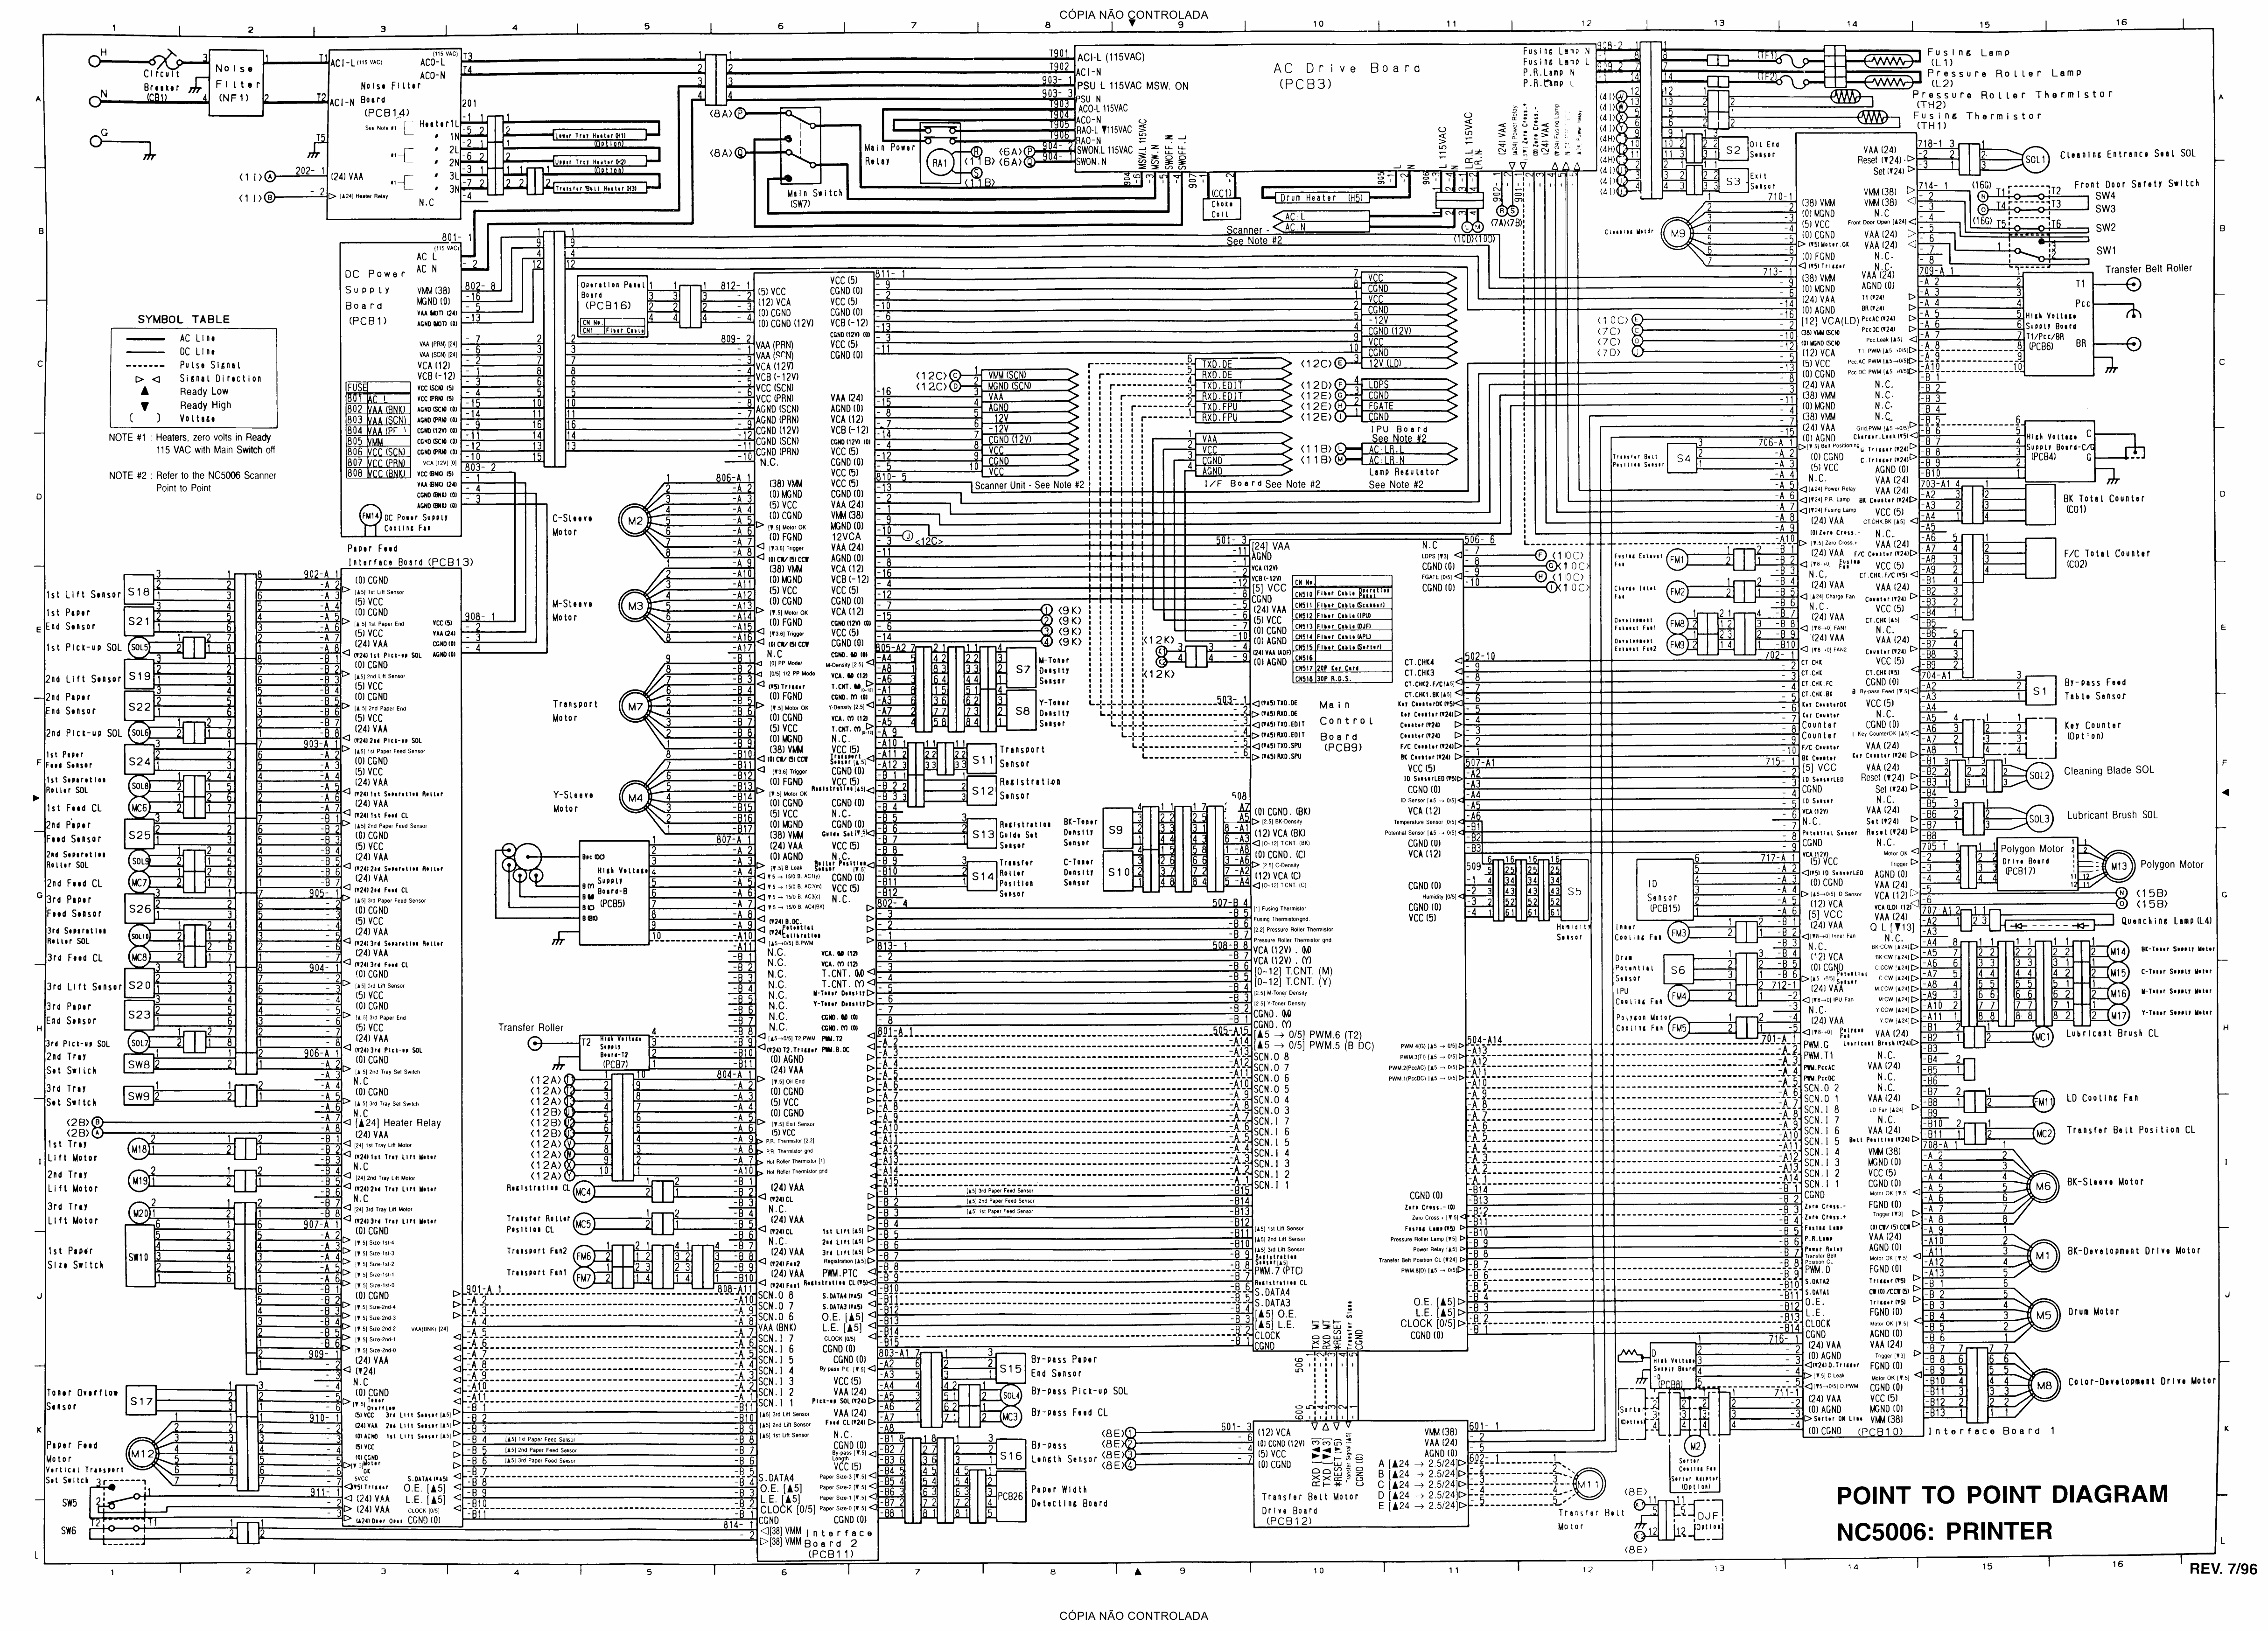 RICOH Aficio NC5006 A109 Circuit Diagram-1